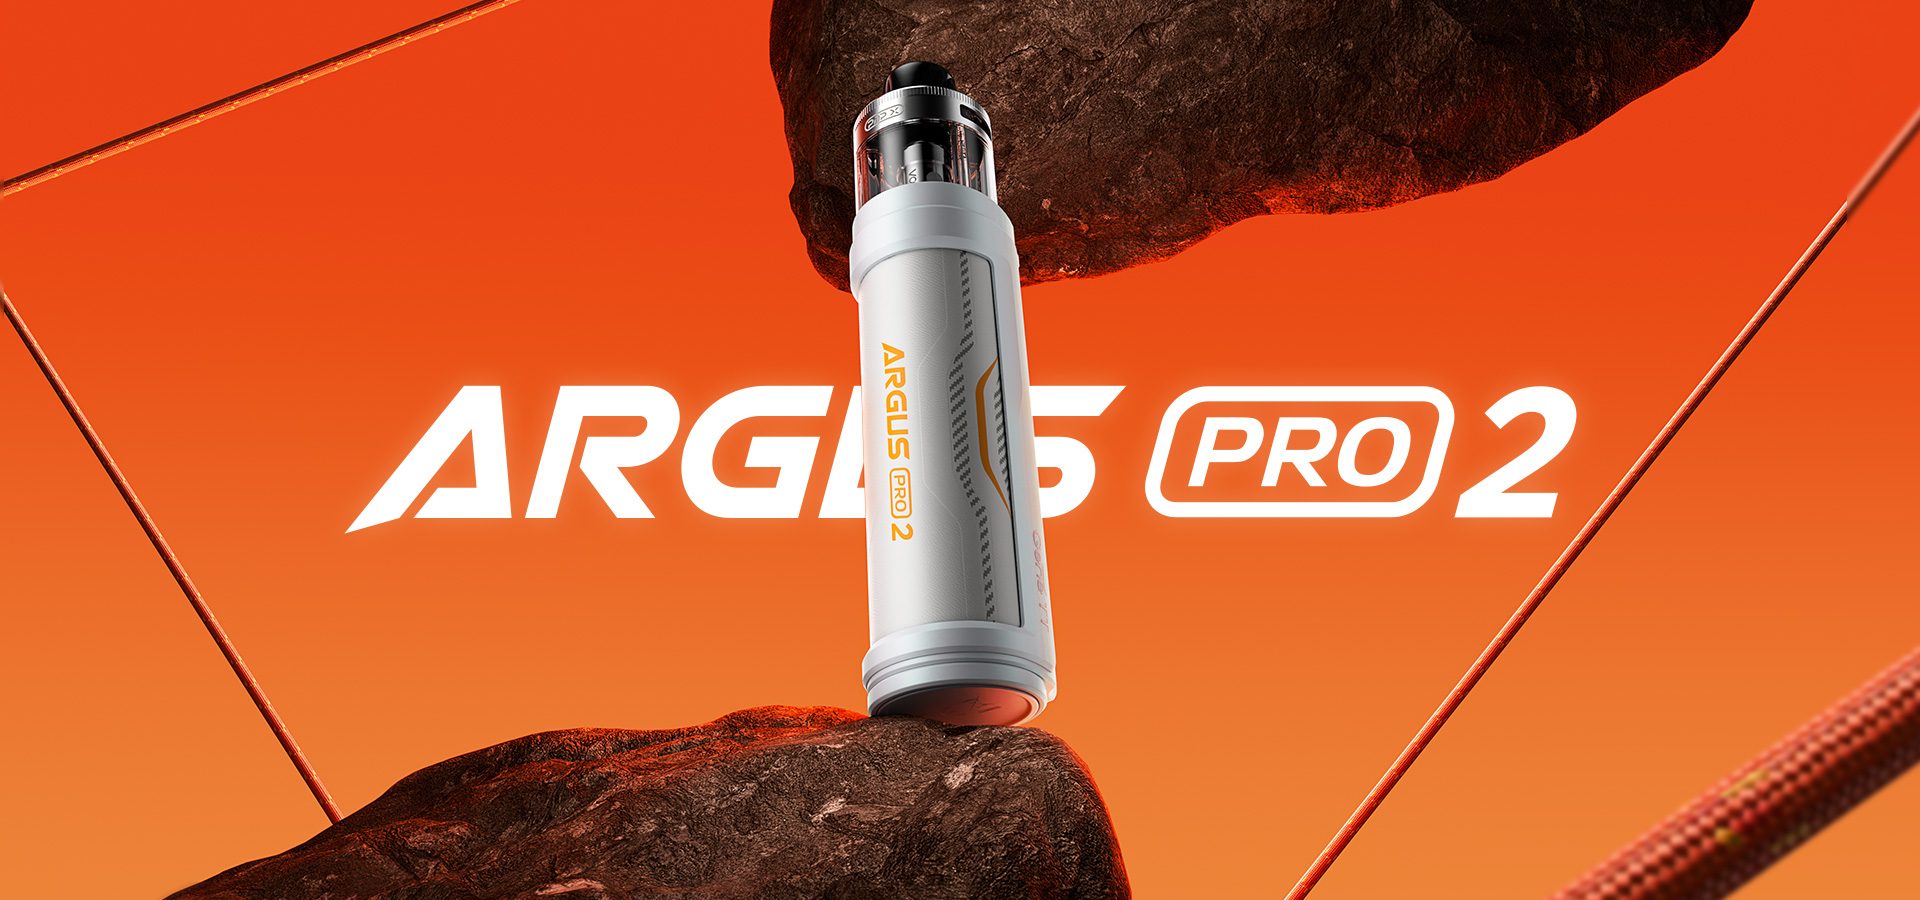 Argus Pro 2